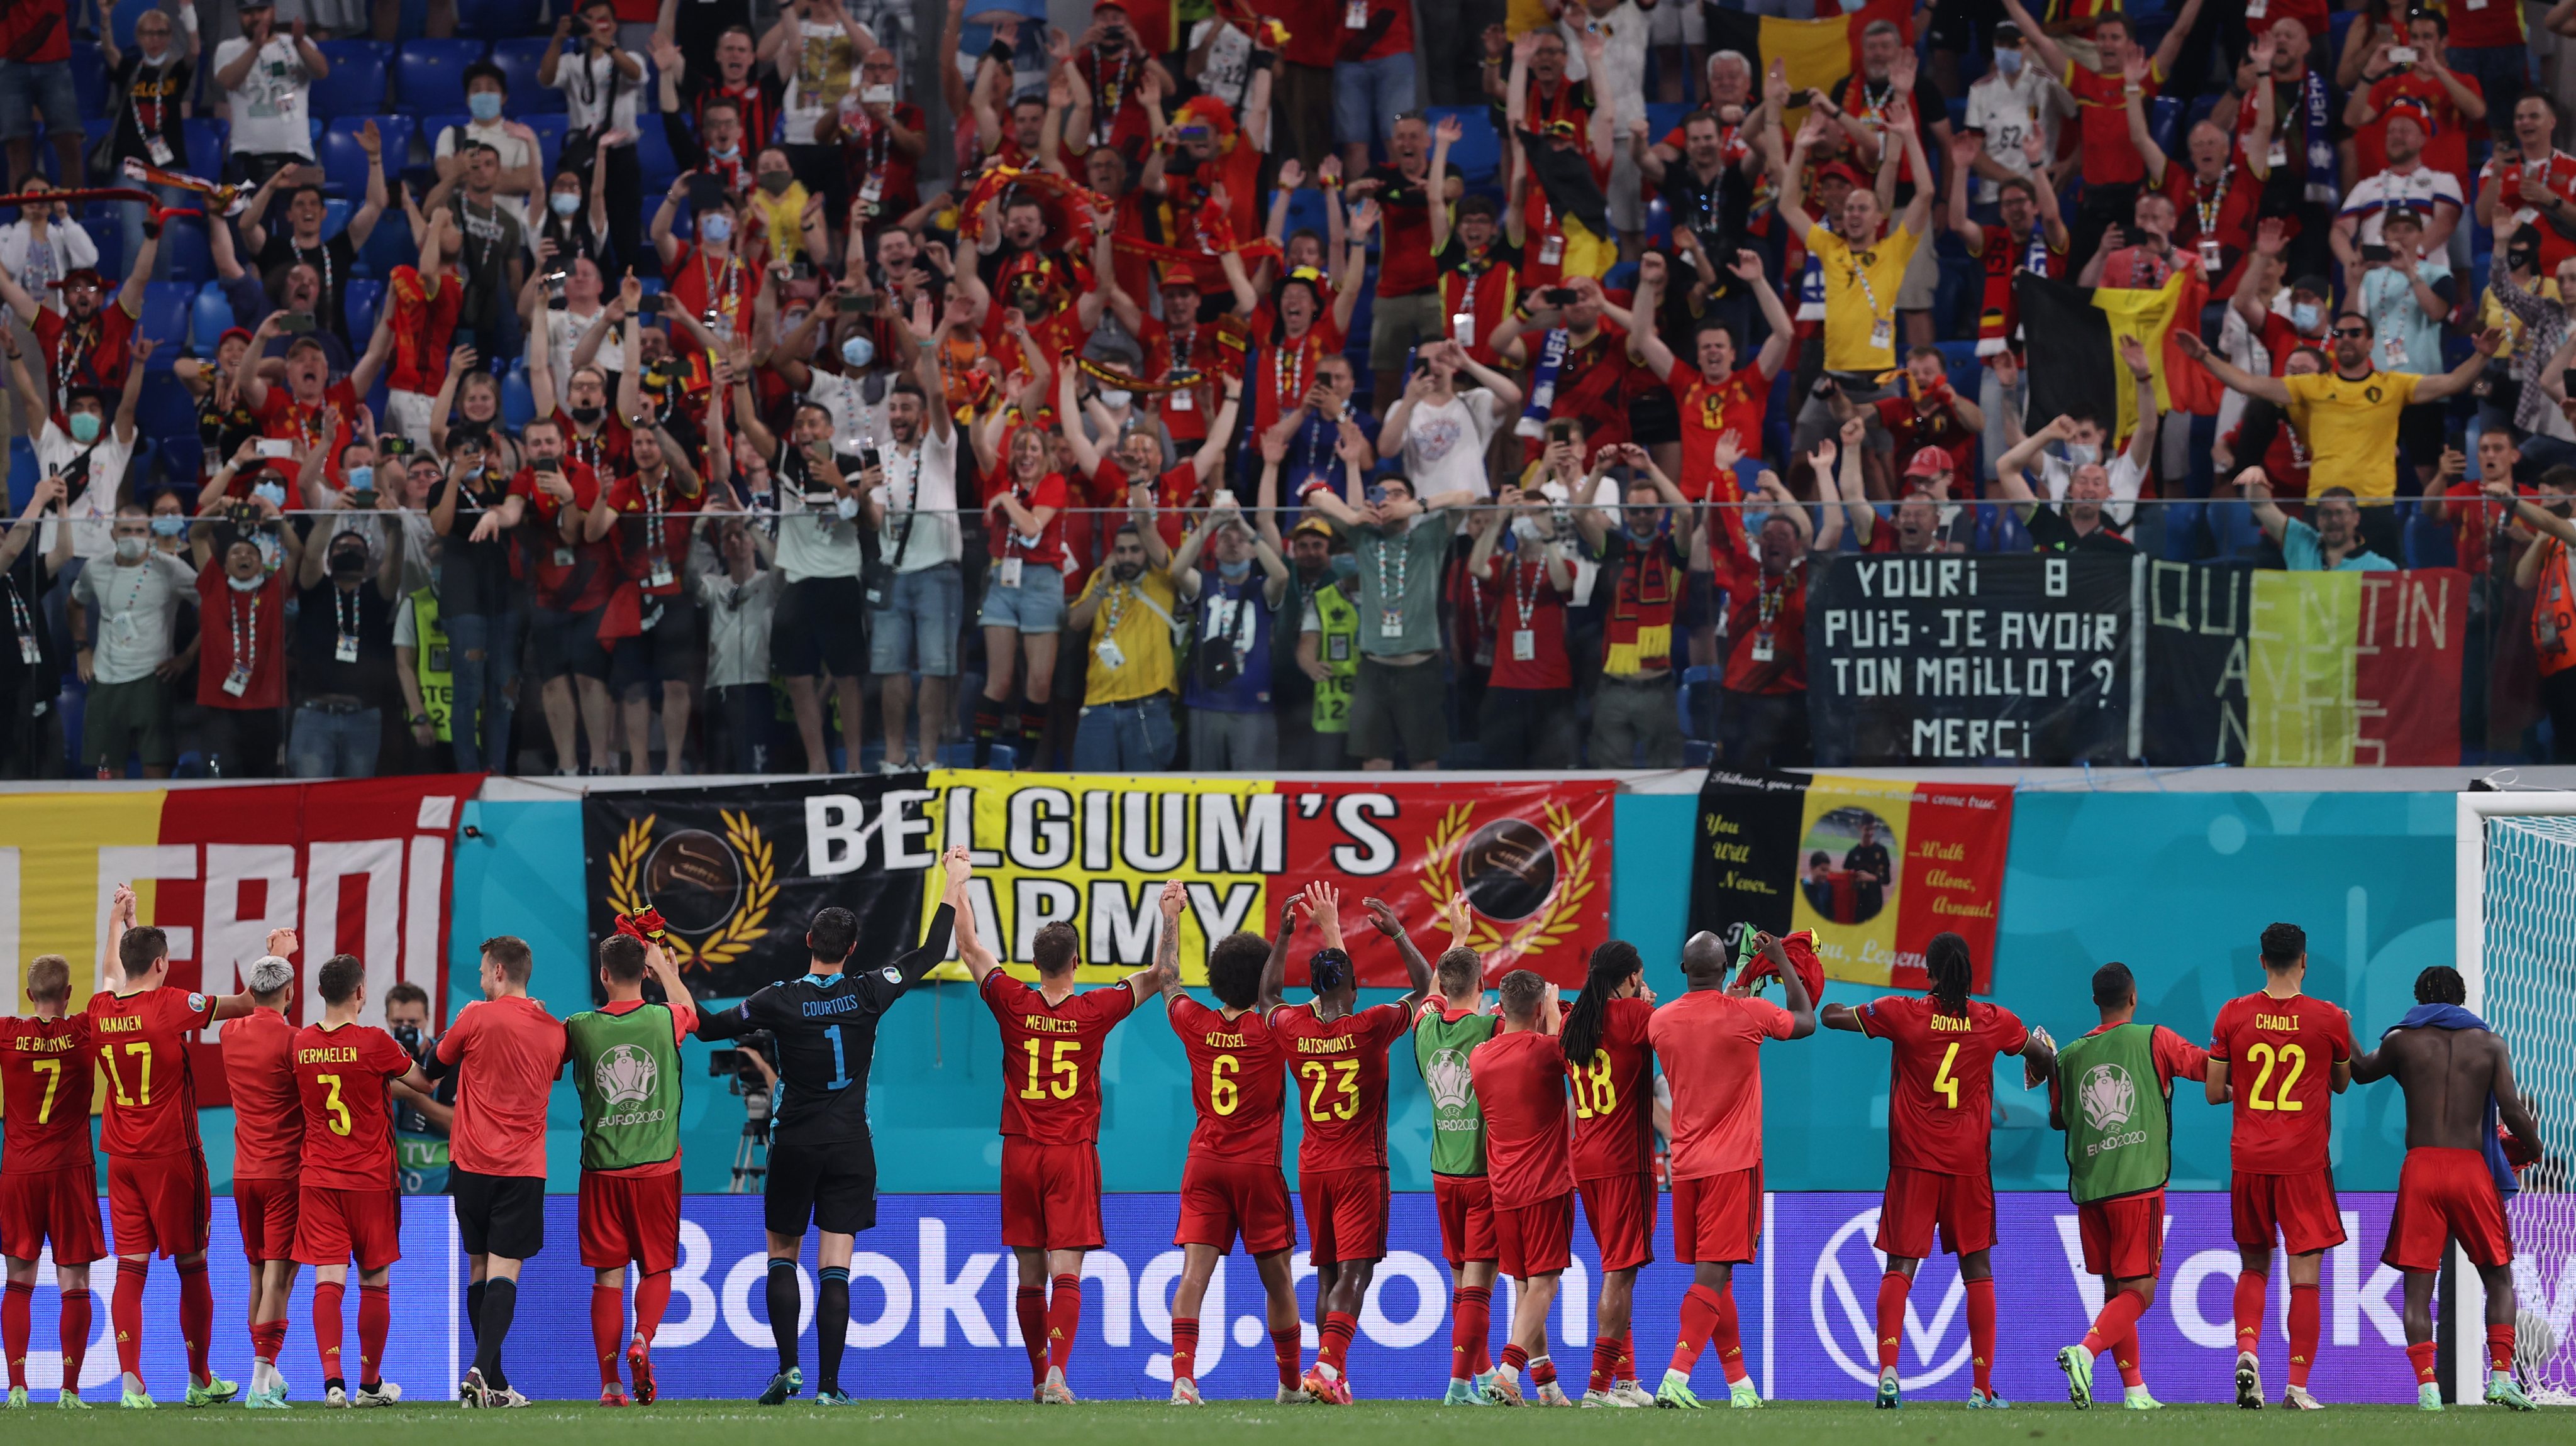 Belgas tornaram-se a terceira equipa a conseguir ganhar o seu grupo apenas com vitórias depois de Itália e Países Baixos